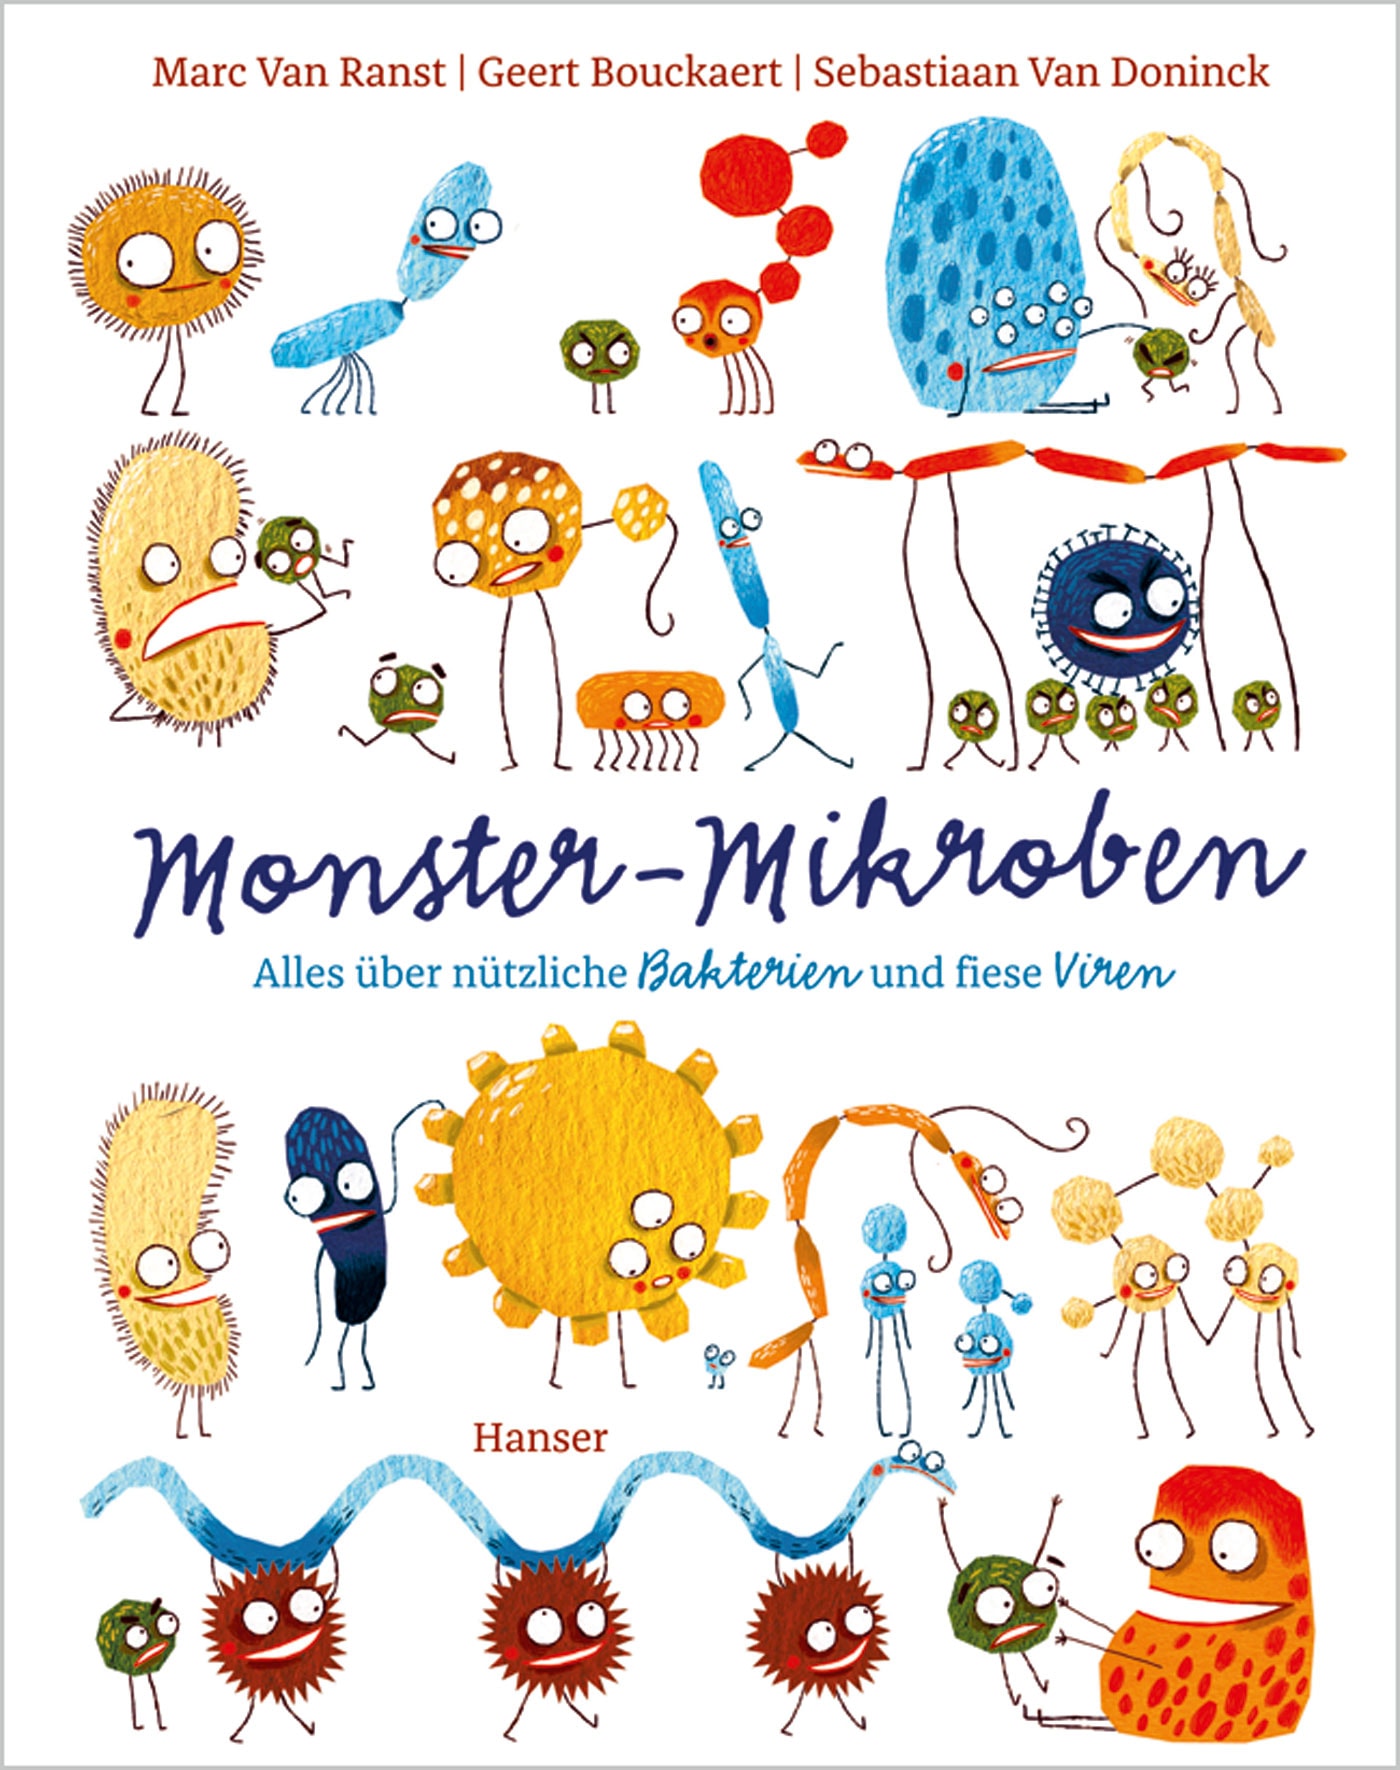 Kindersachbuch-Tipp: Monster-Mikroben // HIMBEER